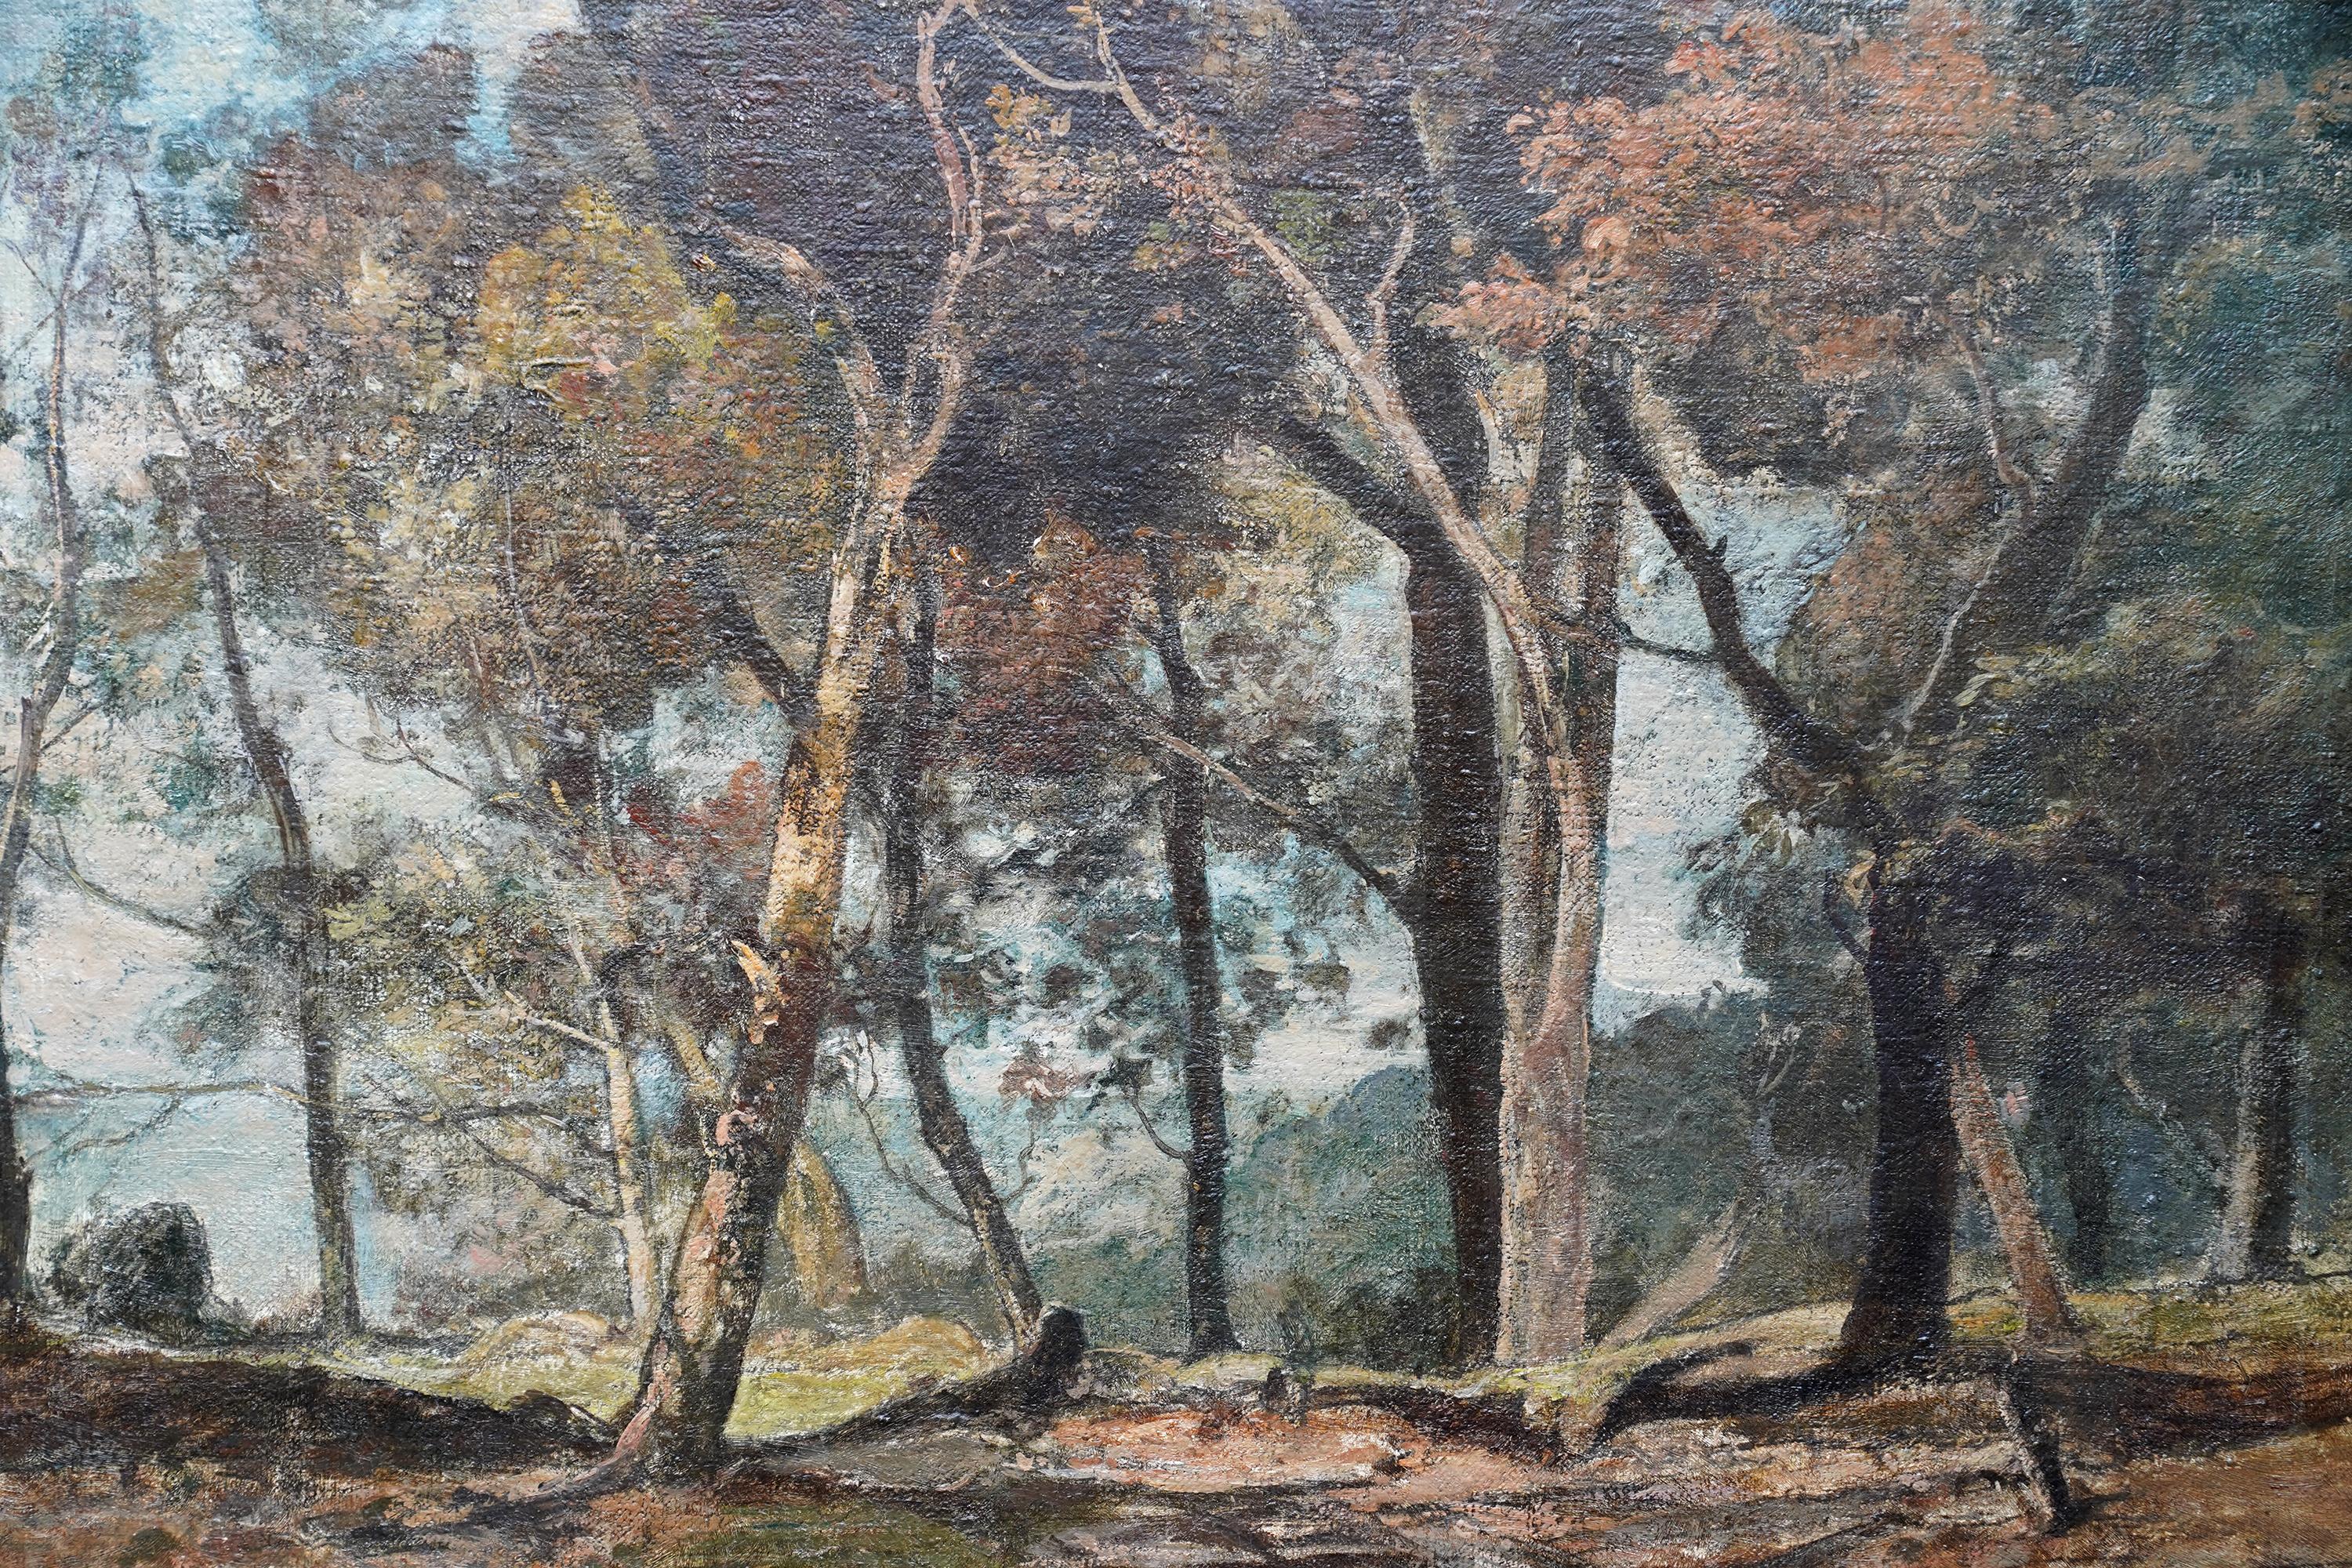 Dieses schöne Ölgemälde einer impressionistischen Landschaft stammt von dem britischen Künstler Oliver Hall, der schon oft ausgestellt hat. Um 1930 gemalt, zeigt die Komposition einen Weg, der sich durch einige Bäume schlängelt und hinter dem das